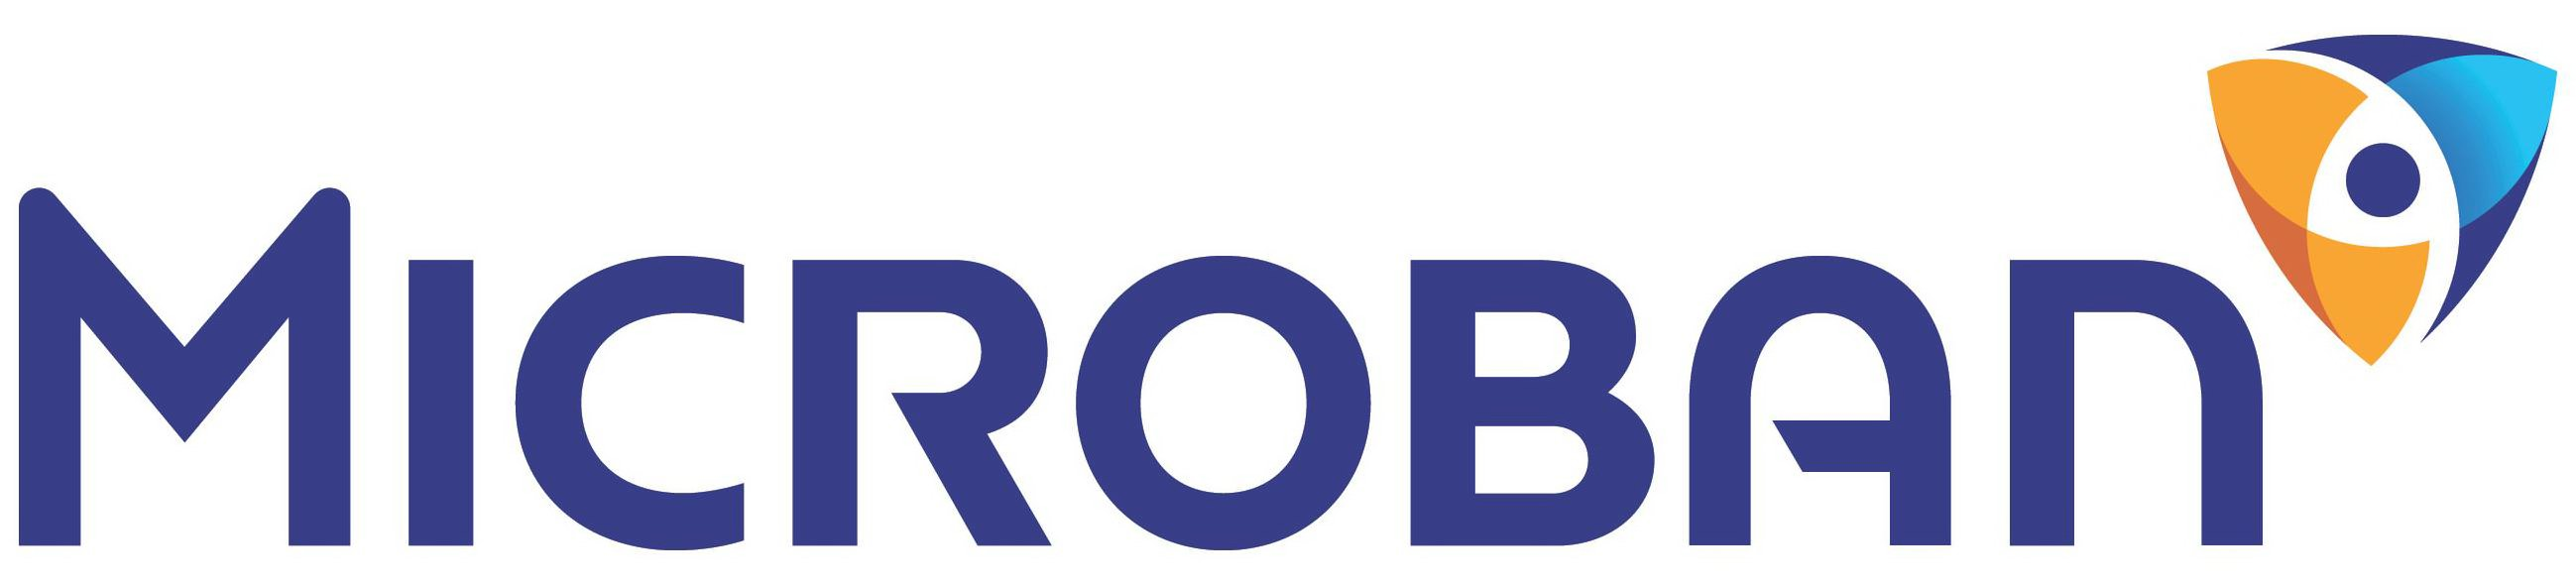 Trademark Logo MICROBAN